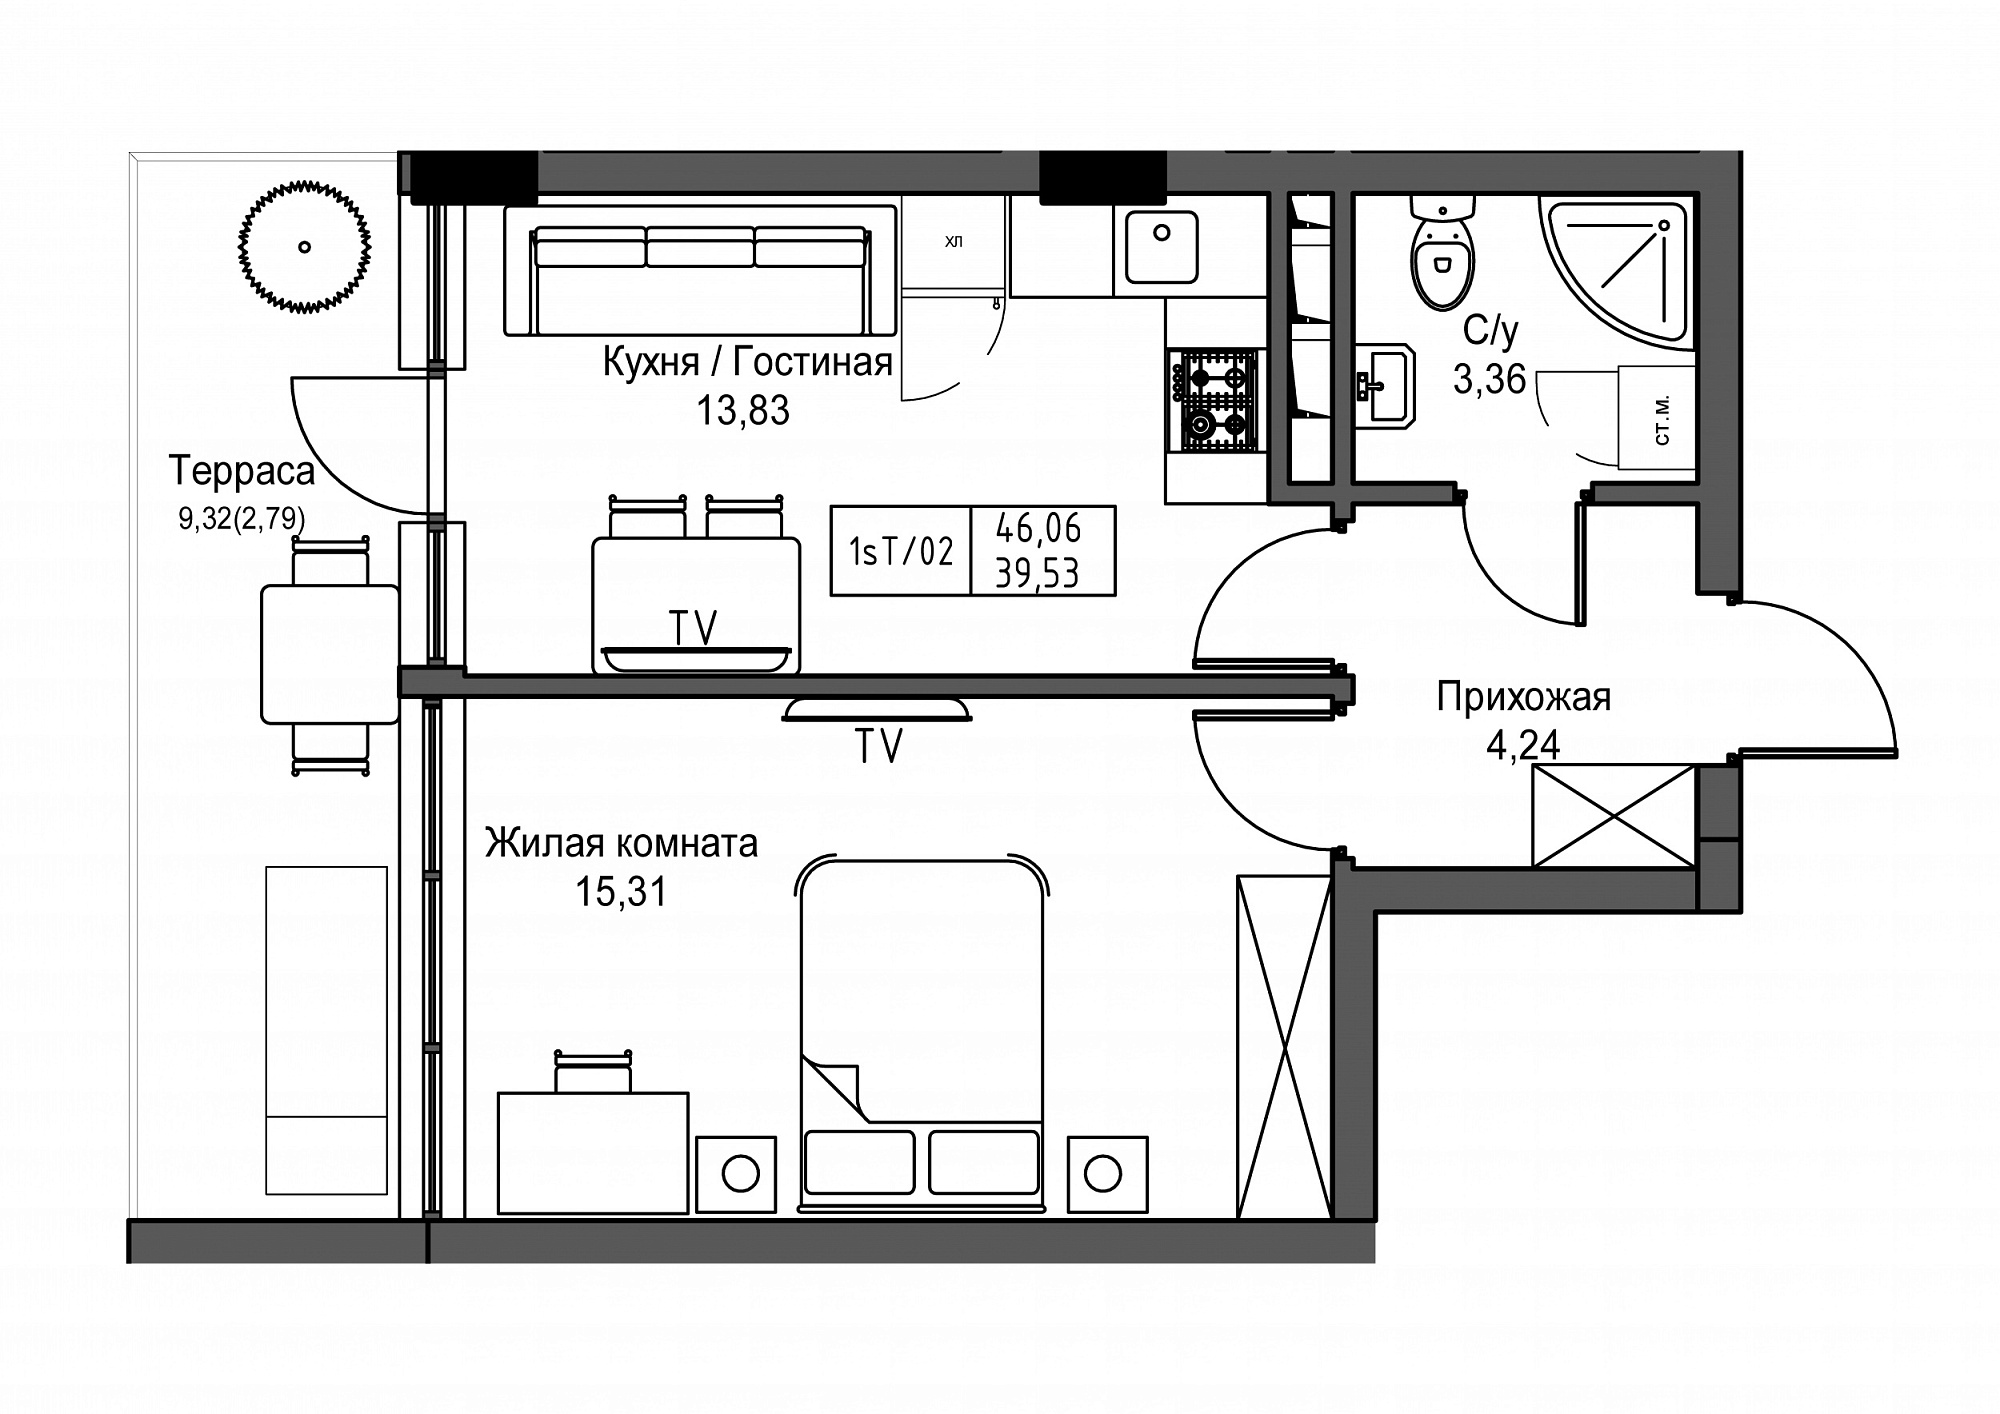 Планировка 1-к квартира площей 39.53м2, UM-003-02/0010.